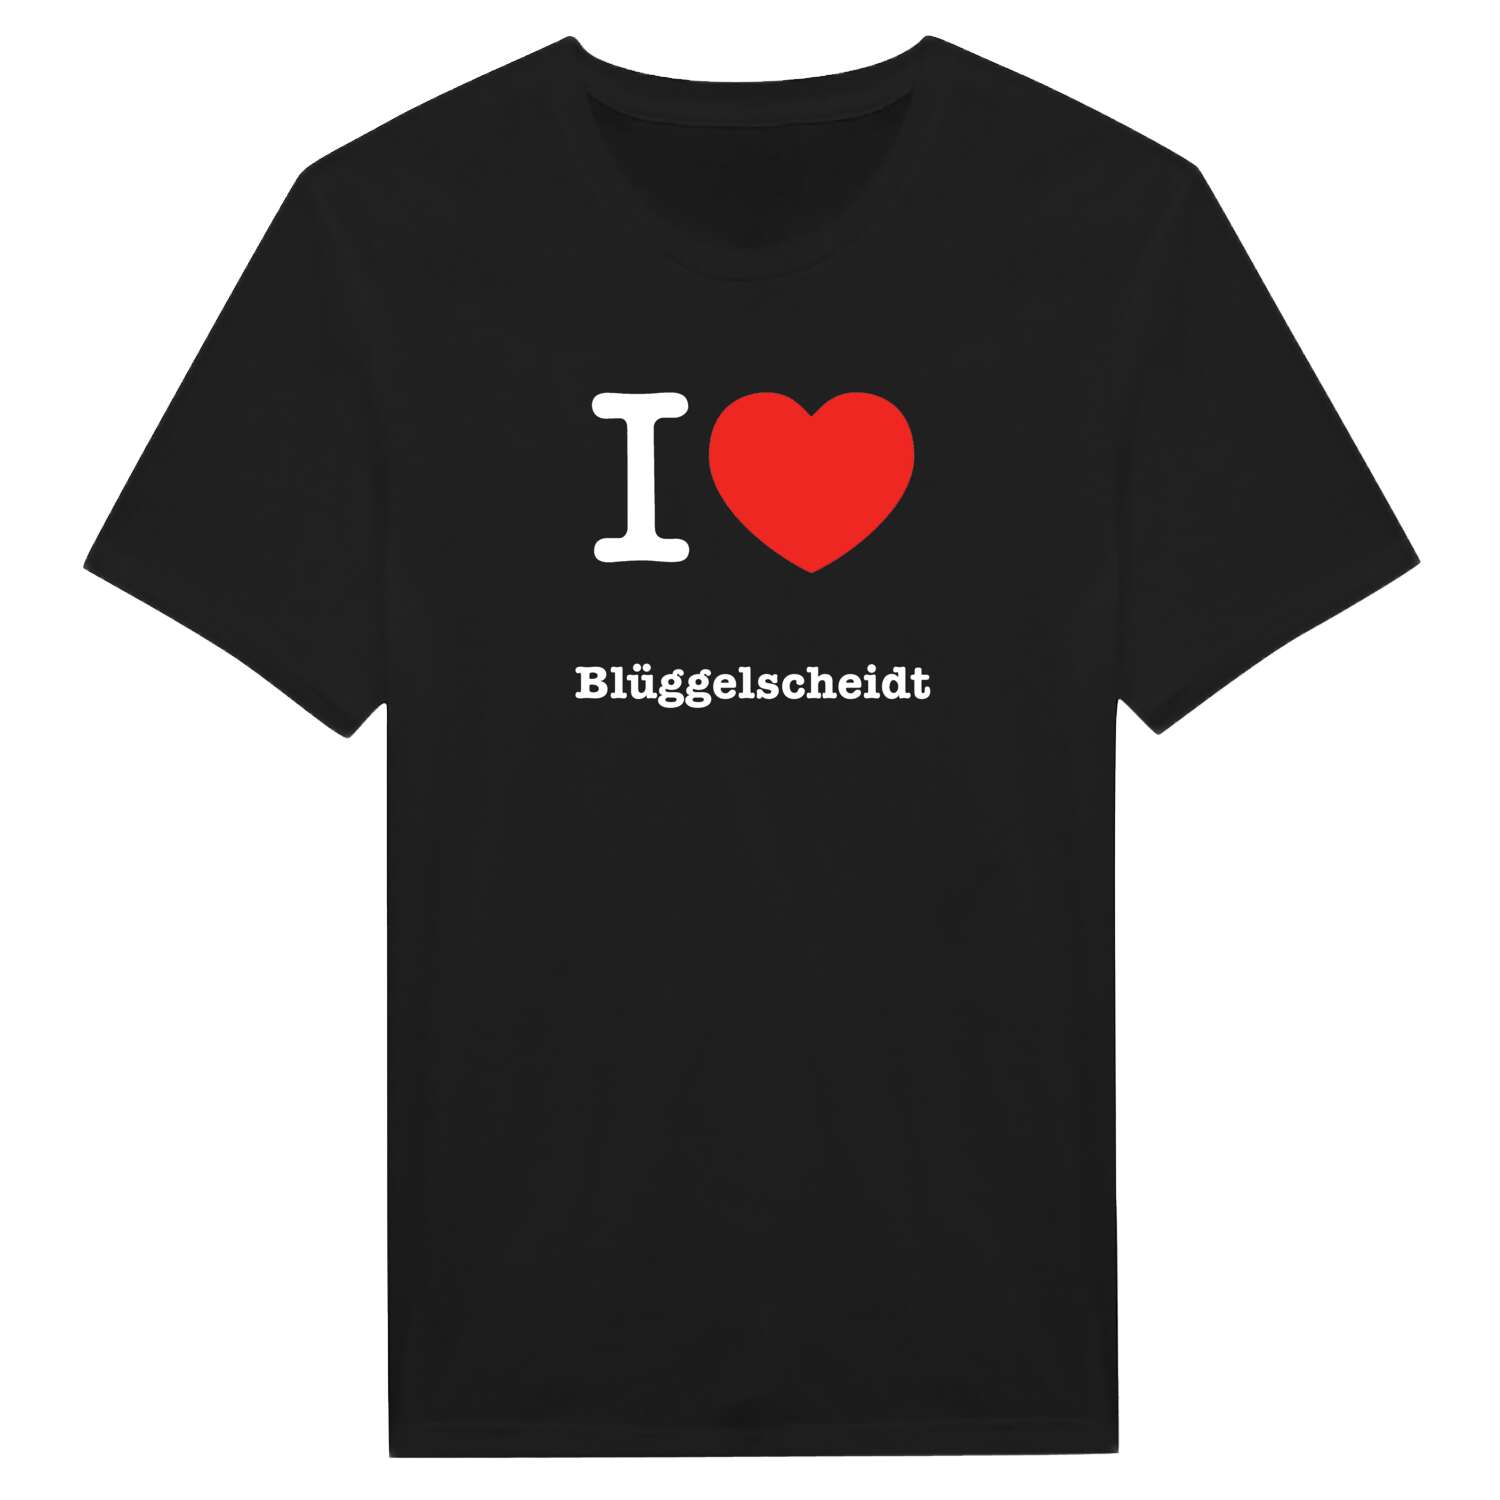 Blüggelscheidt T-Shirt »I love«